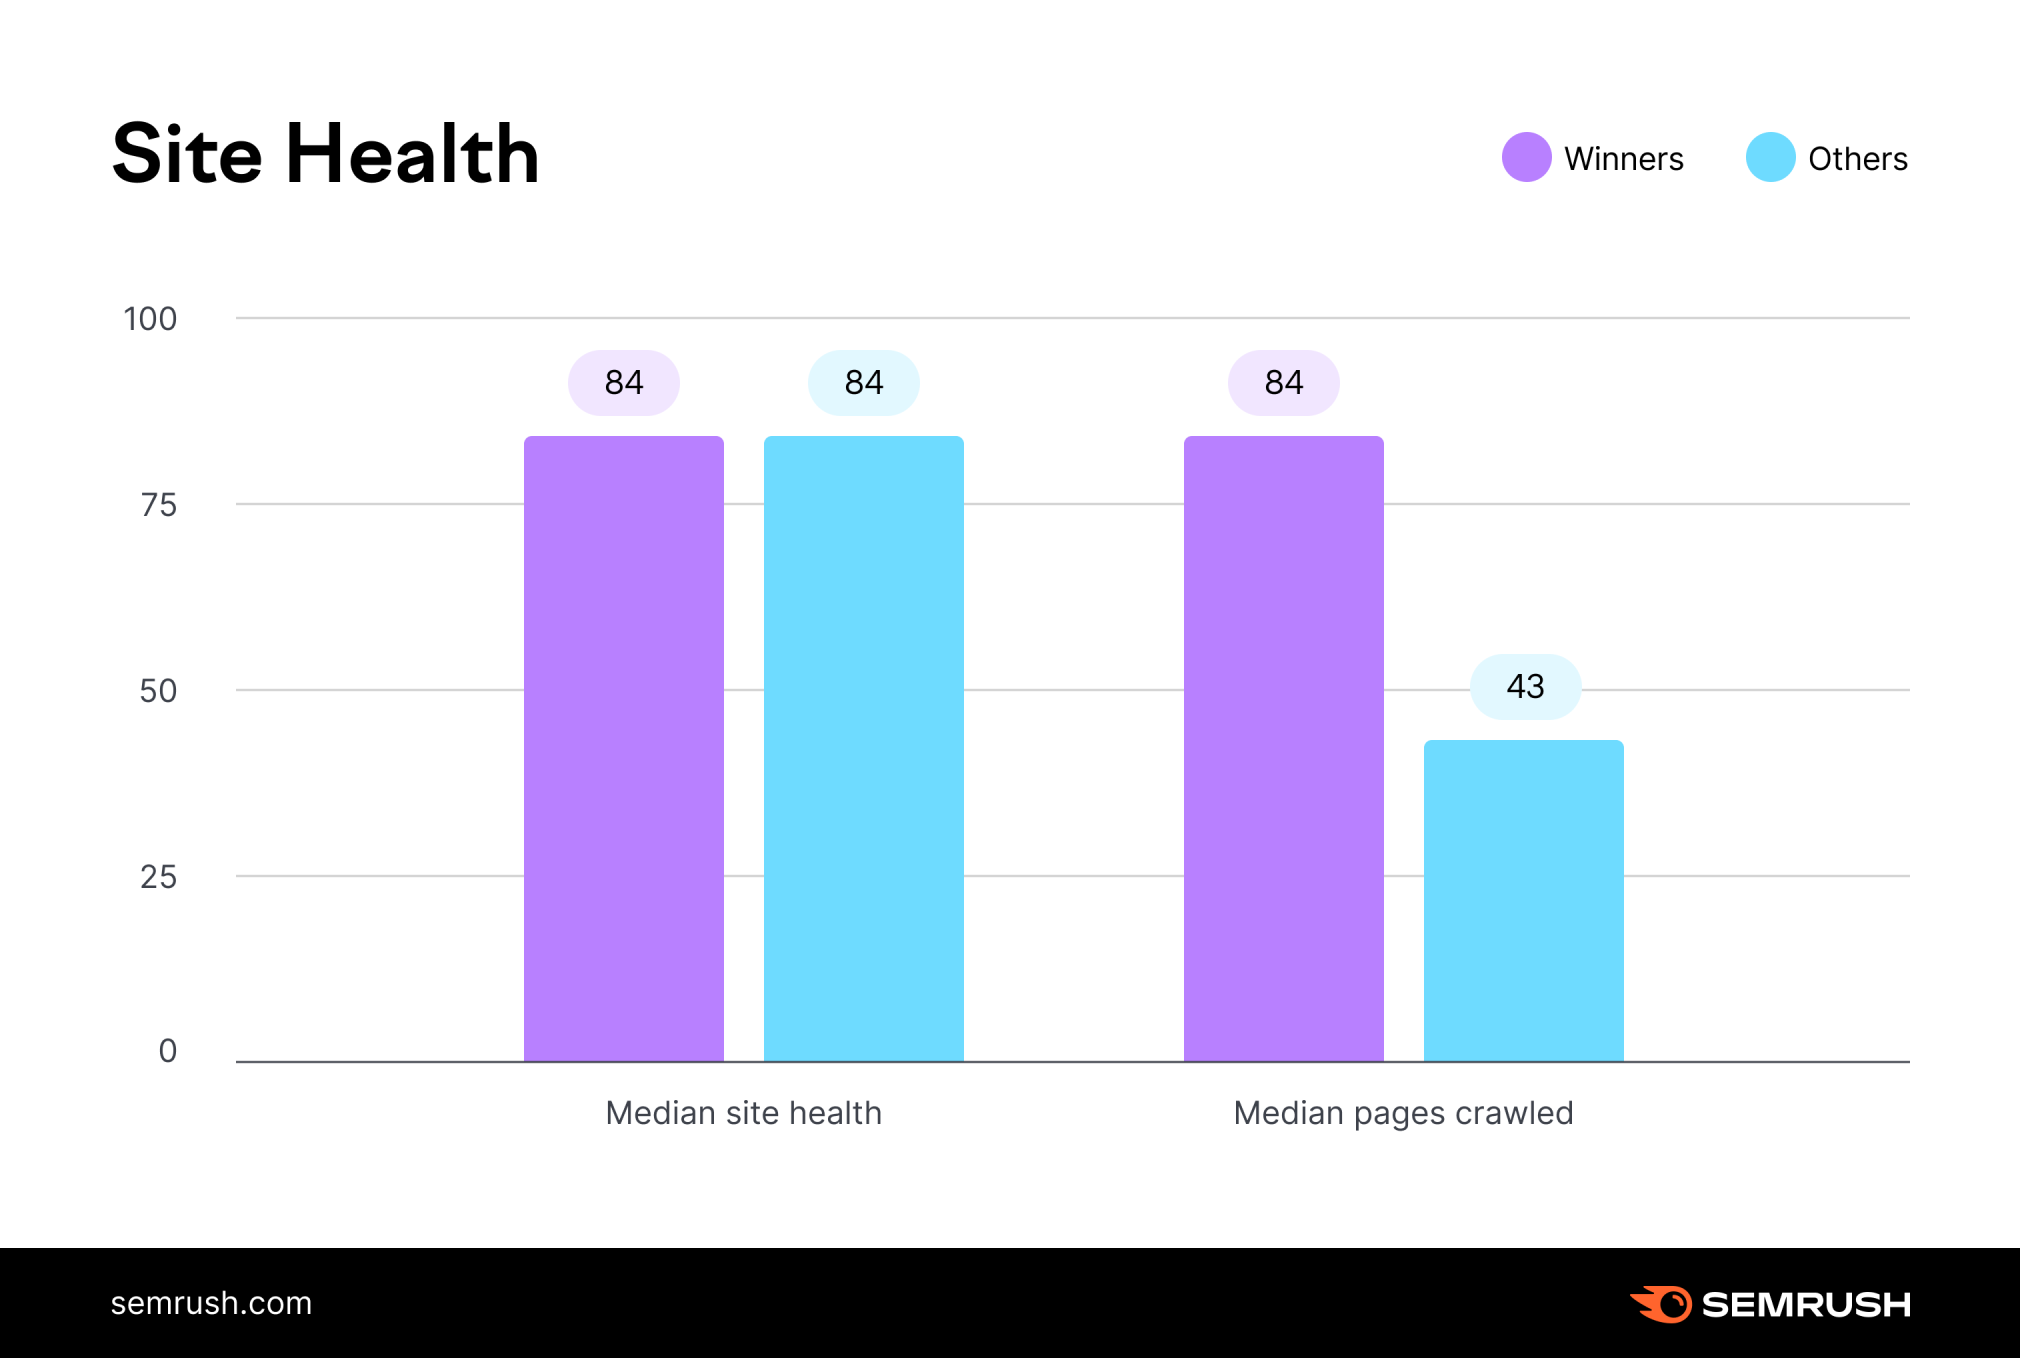 این نمودار از Semrush میانگین سلامت سایت و صفحات میانه خزیده شده را برای دو گروه از دامنه ها مقایسه می کند.